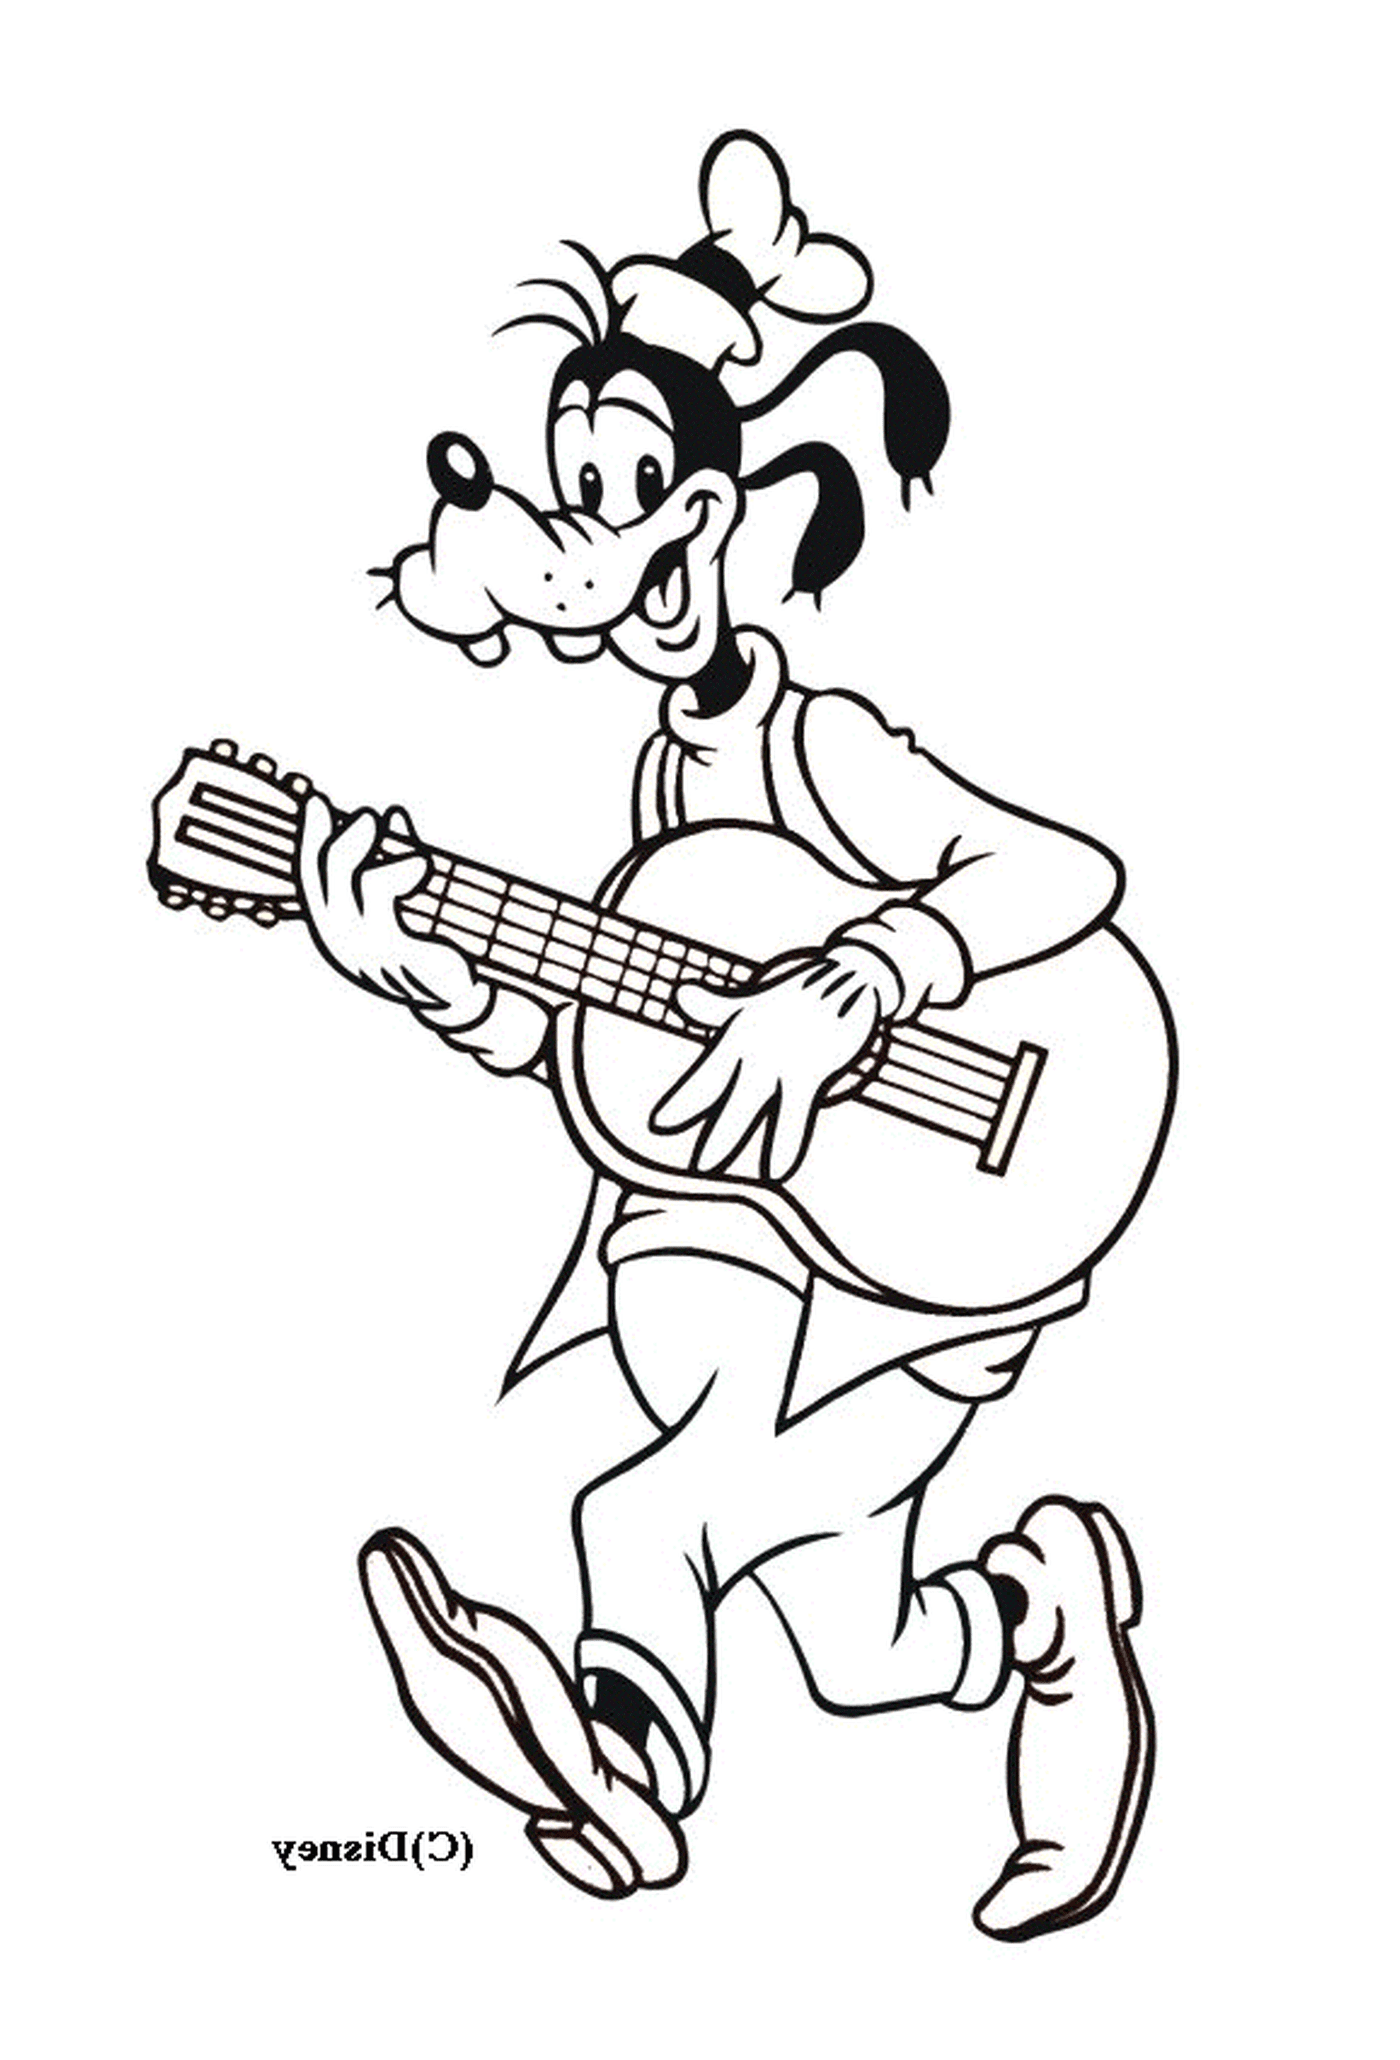  Dingo toca guitarra enquanto está de pé 